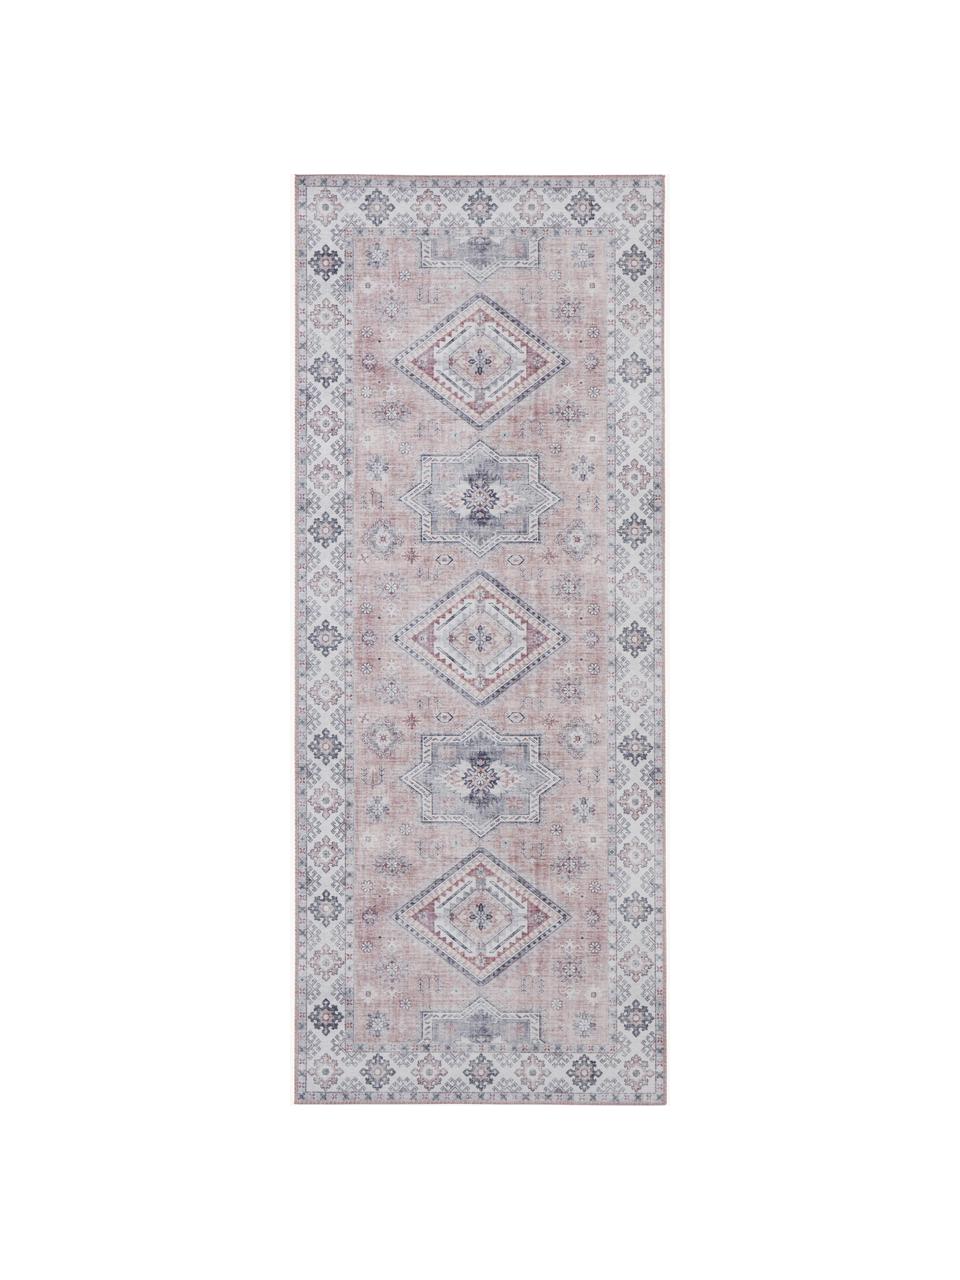 Läufer Gratia im Vintage Style, 100% Polyester, Rosa- und Grautöne, B 80 x L 200 cm